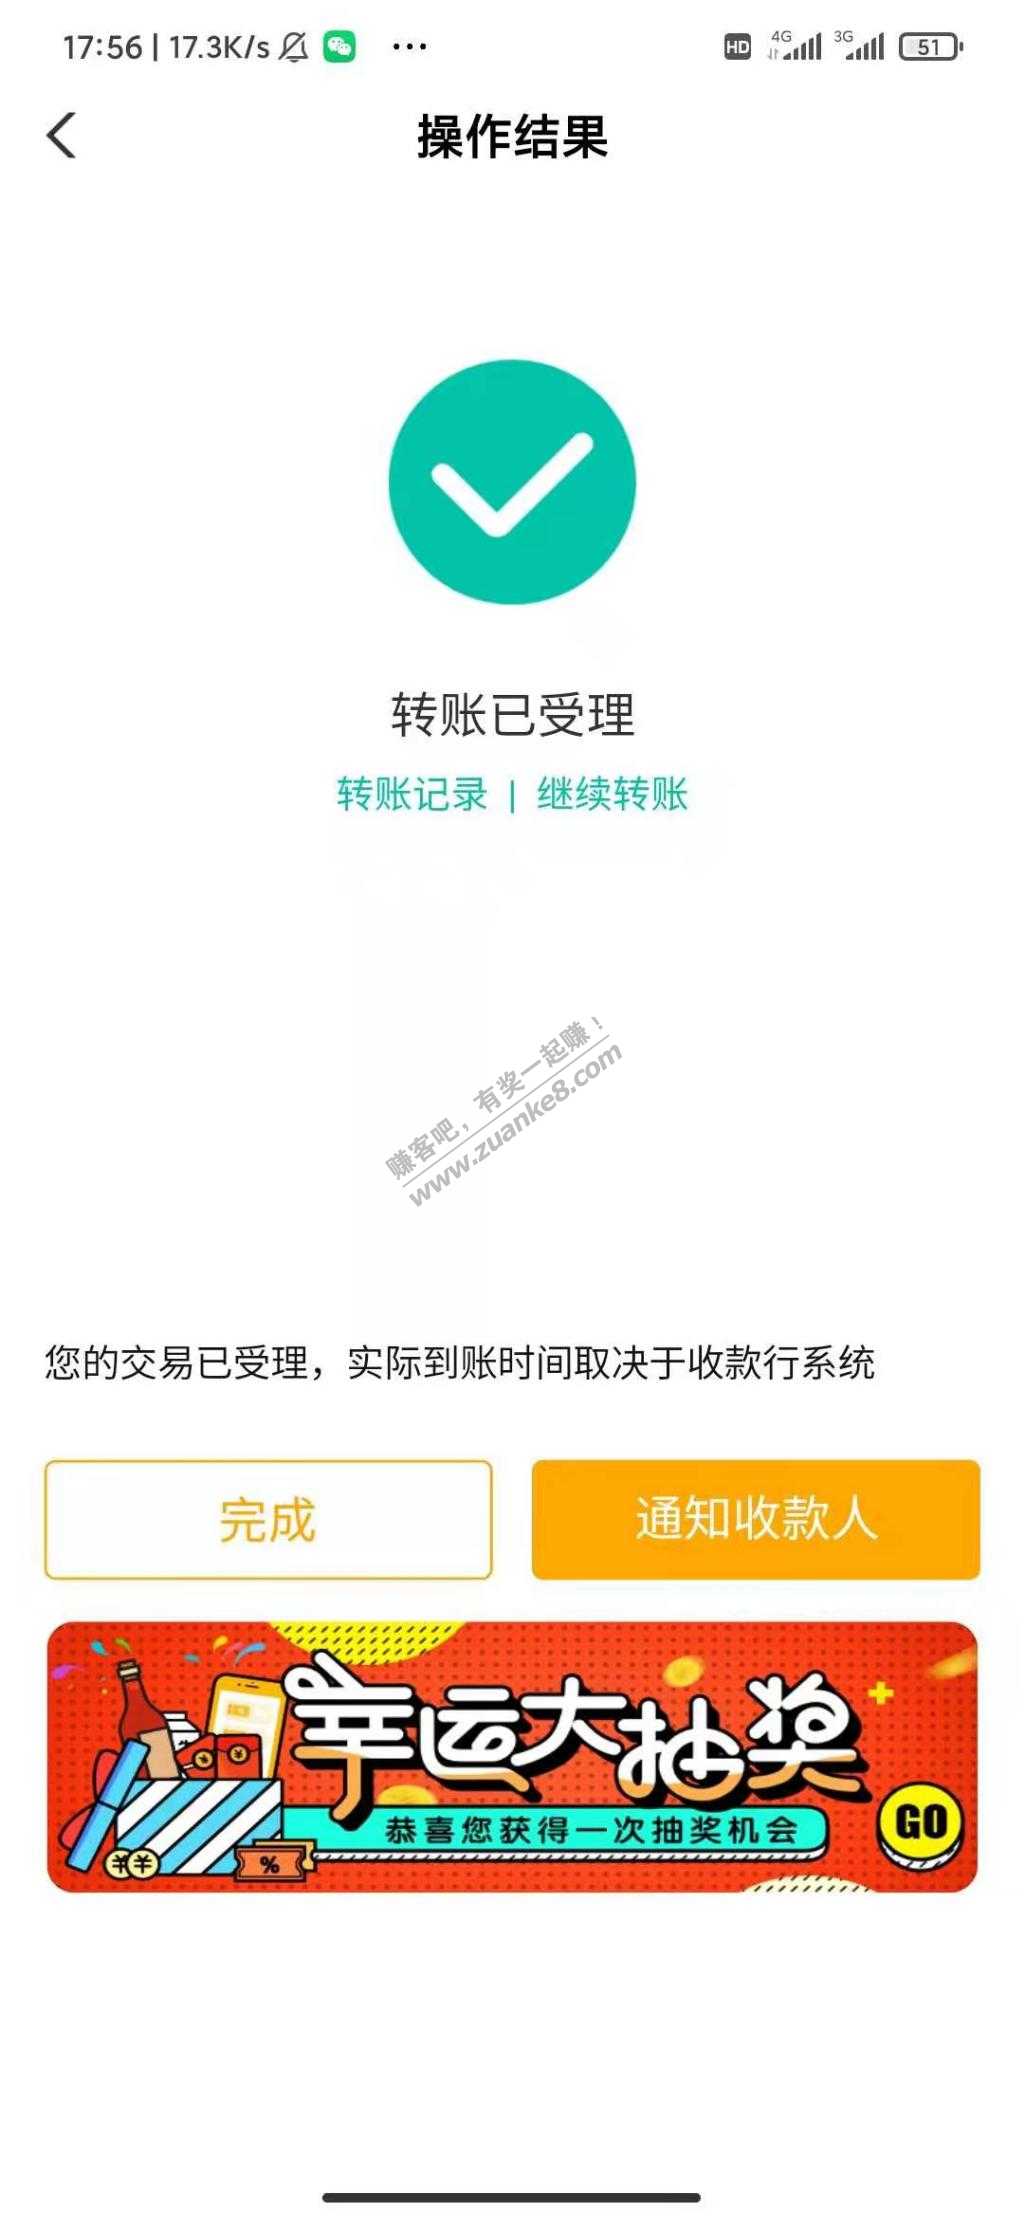 农行银行app任意转账5元V.x现金红包。任意V.x兑换。-惠小助(52huixz.com)